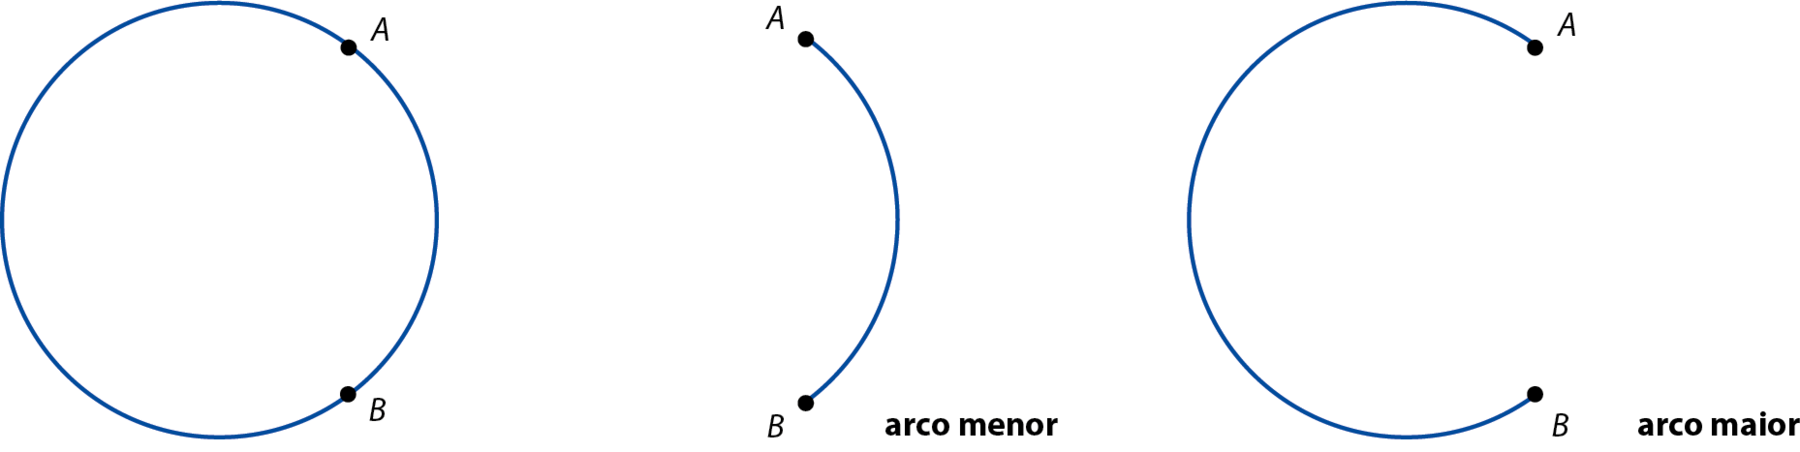 Ilustração. Circunferência com ponto A e B na extremidade direita.  Ilustração. Arco AB virado para esquerda.  Ilustração. Arco AB quase completo.